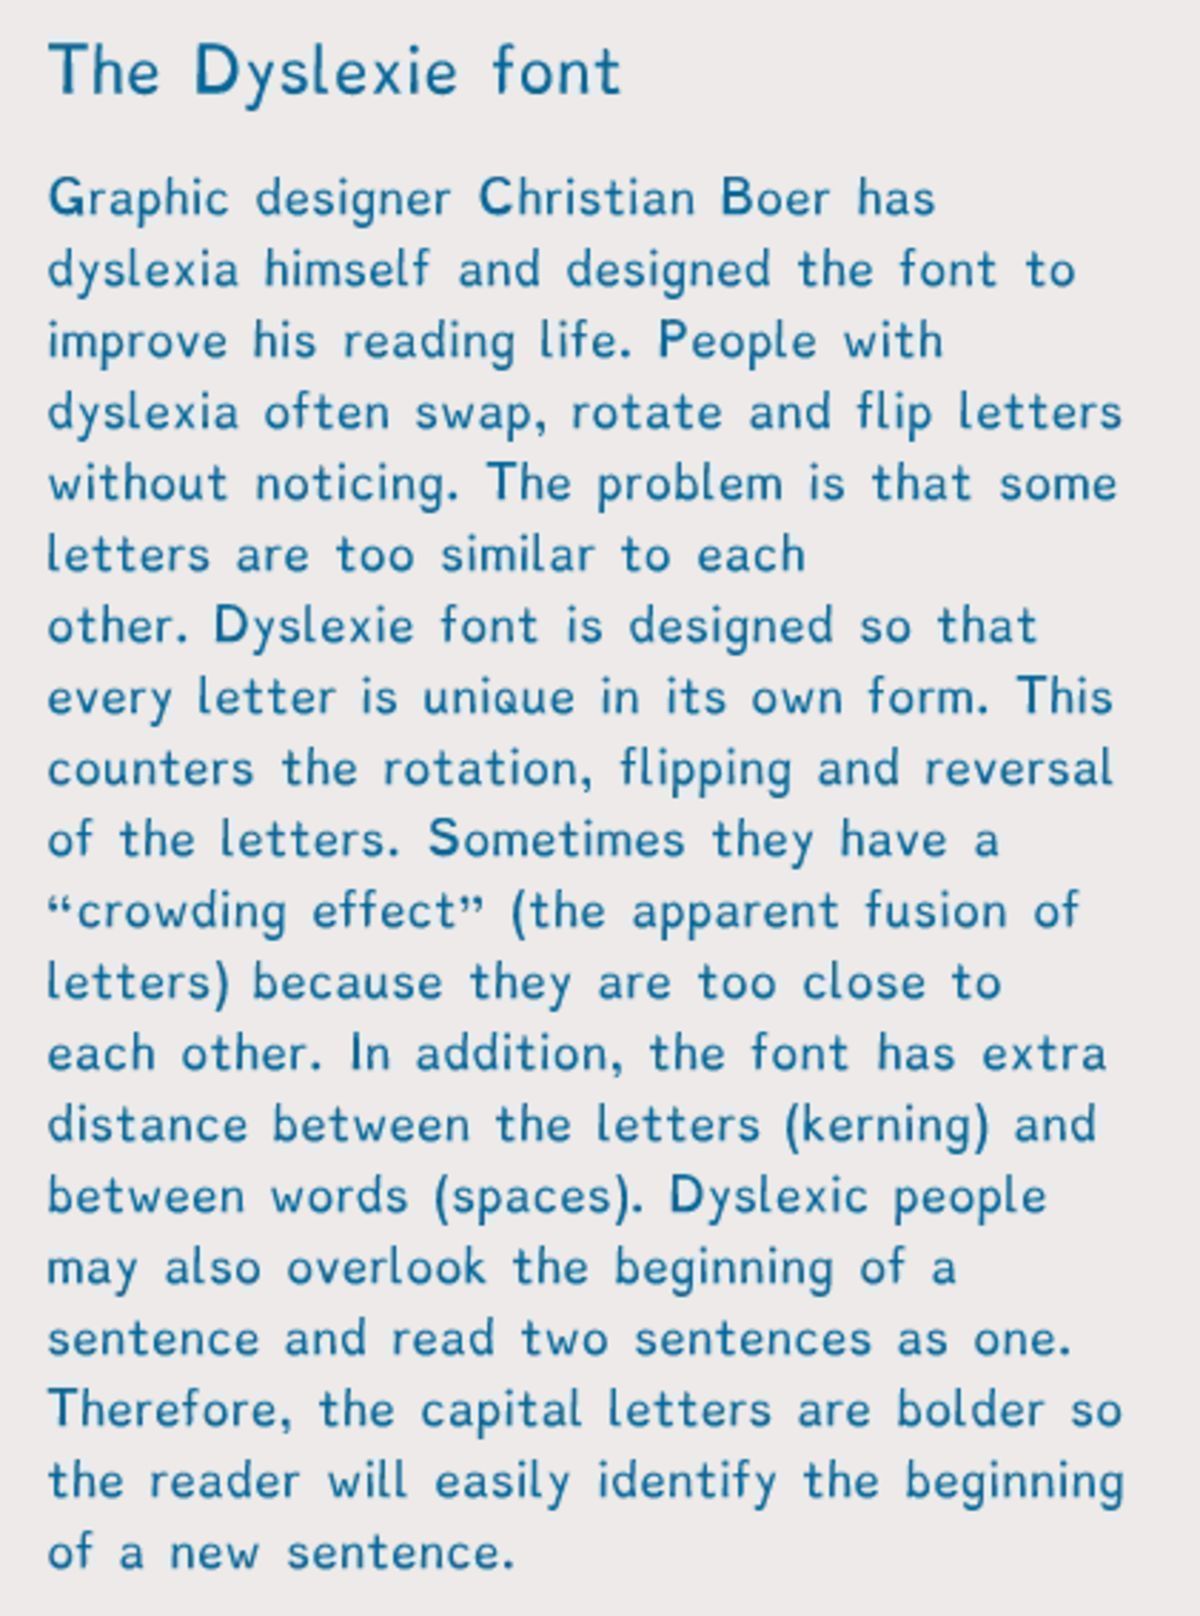 Cette police d'écriture facilite la lecture pour les dyslexiques